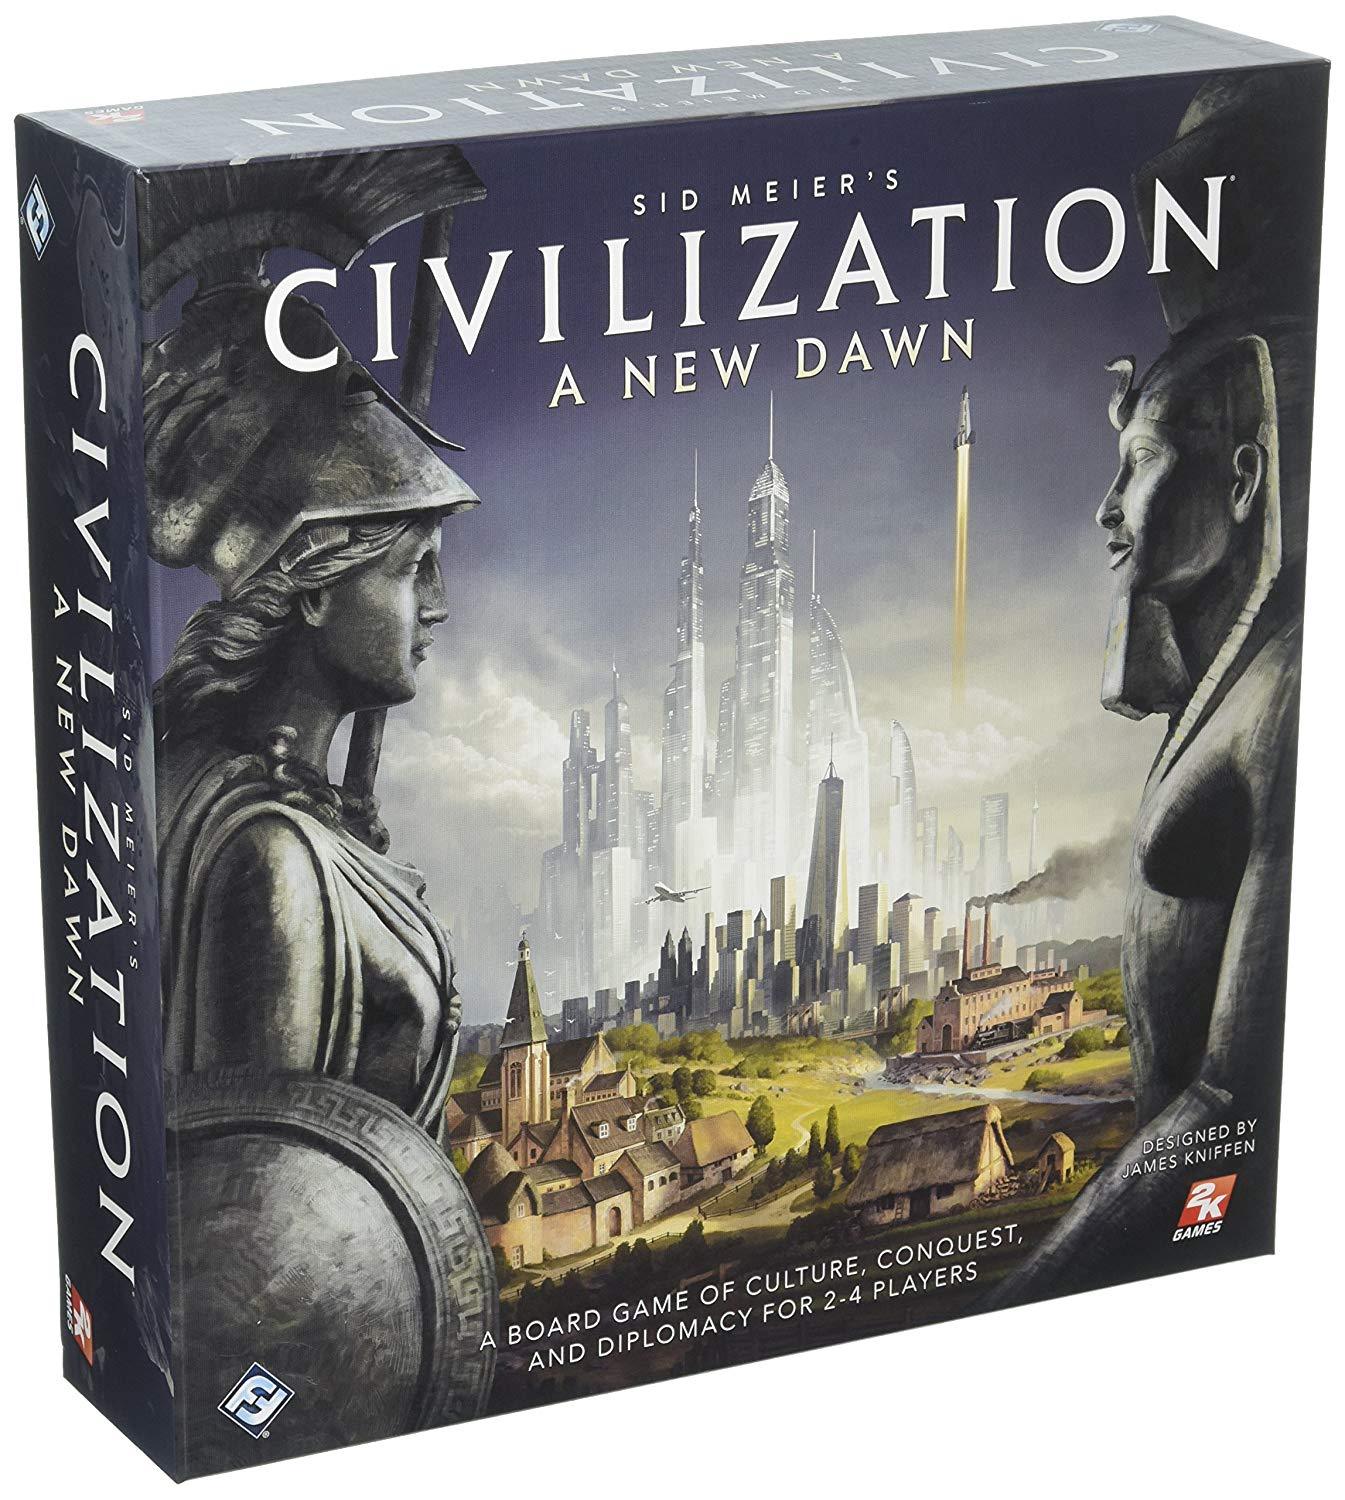 სამაგიდო თამაში ცივილიზაცია. ახალი განთიადი (Civilization A New Dawn) სამაგიდო თამაში